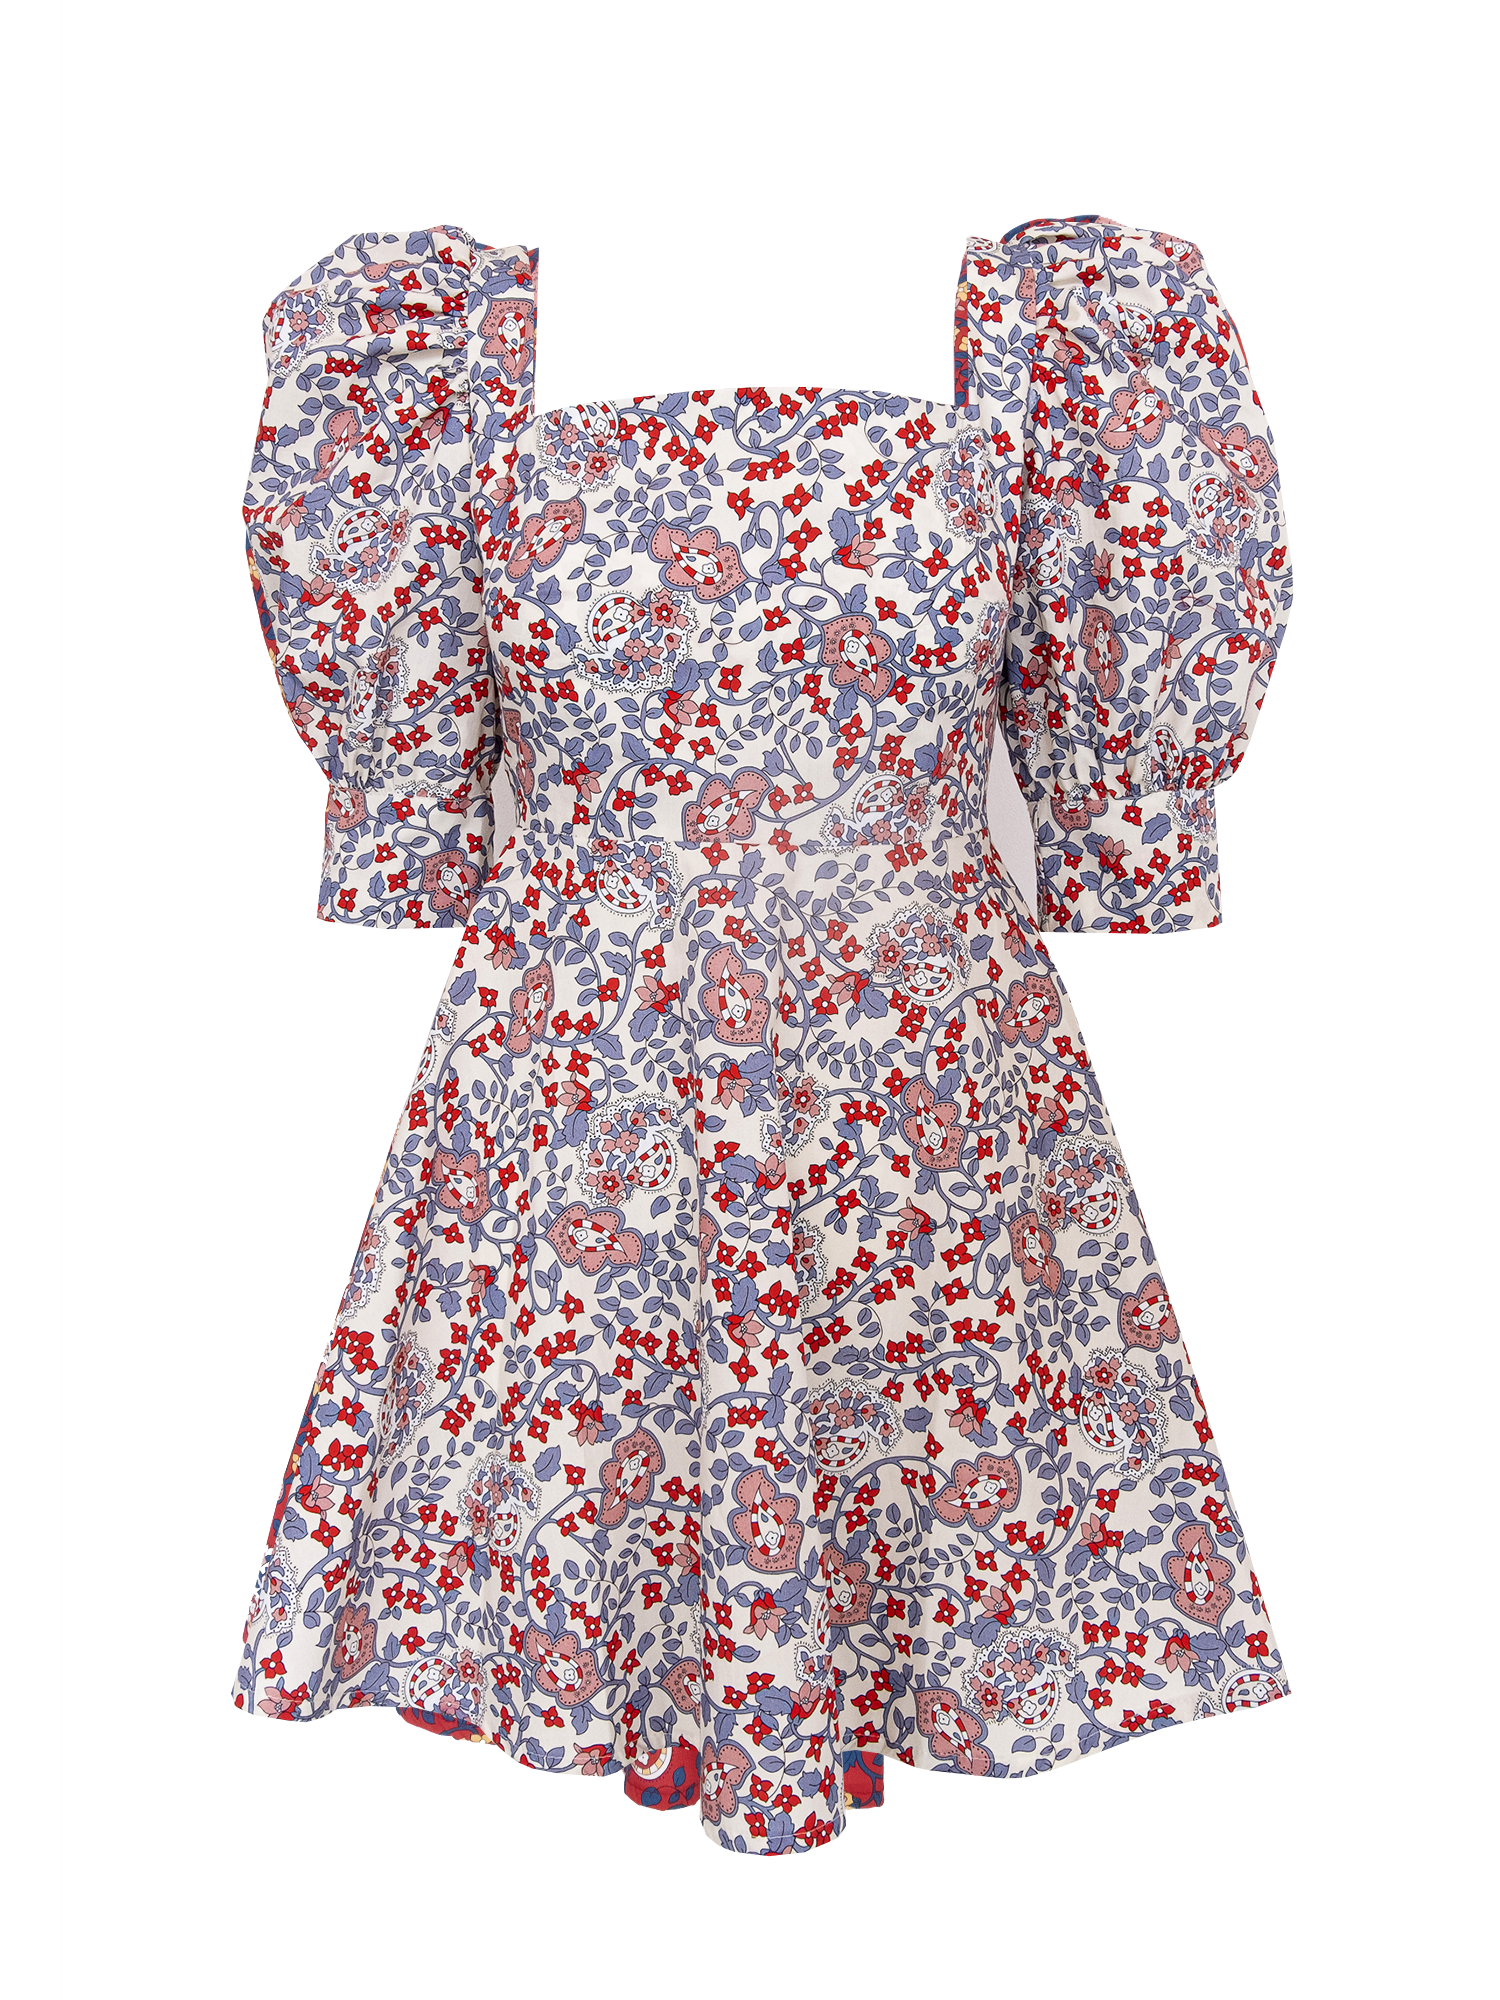 MIMOSA - short dress in cotton in Kew pattern